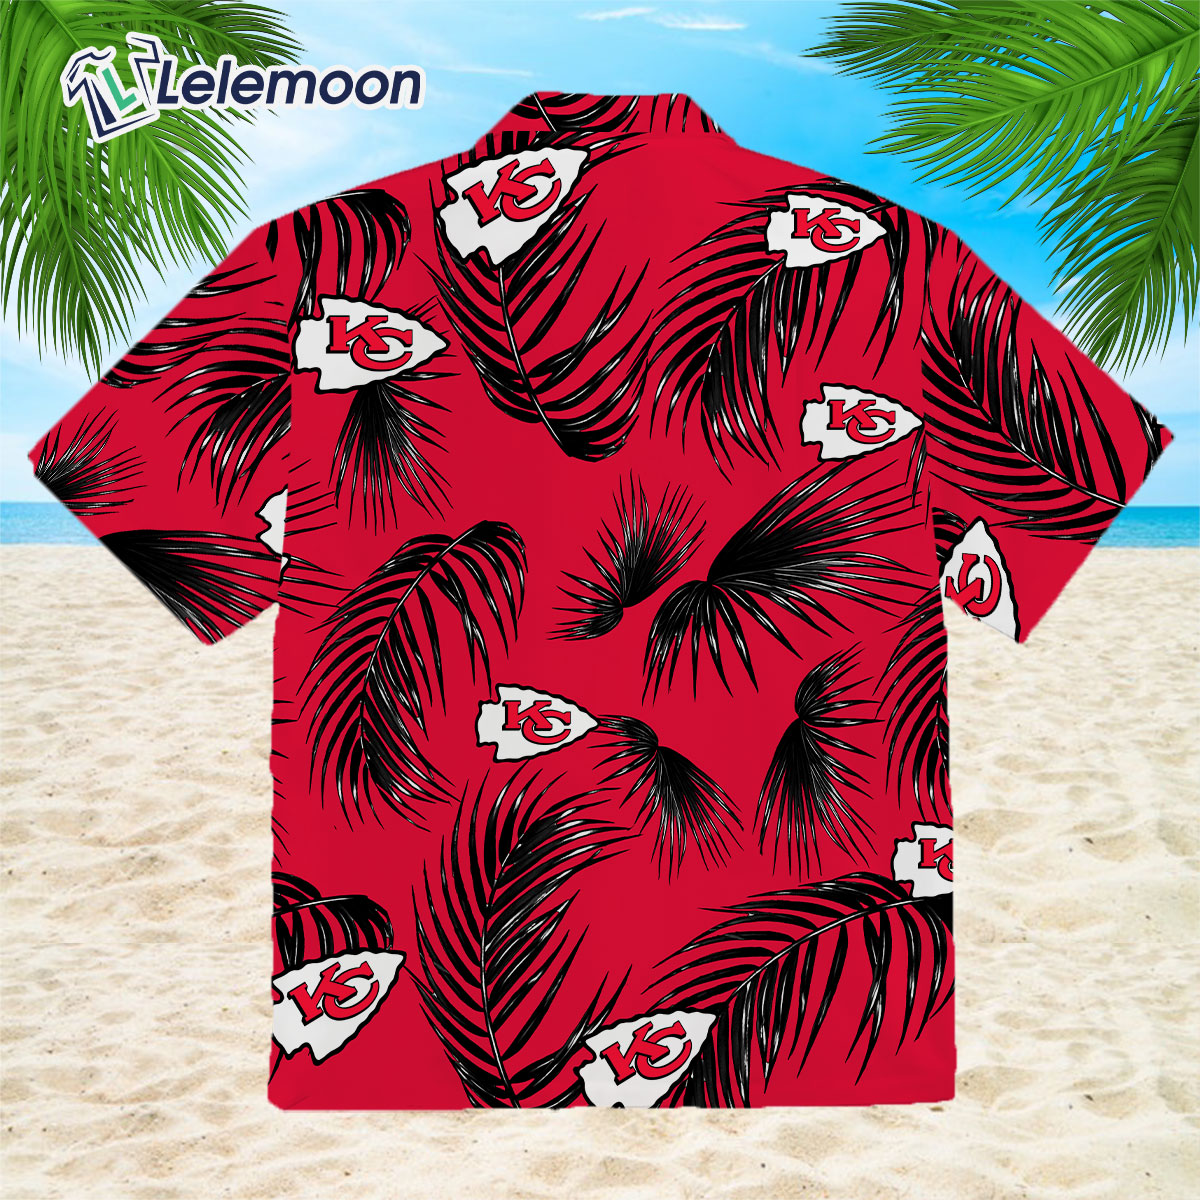 andy reid hawaiian shirt